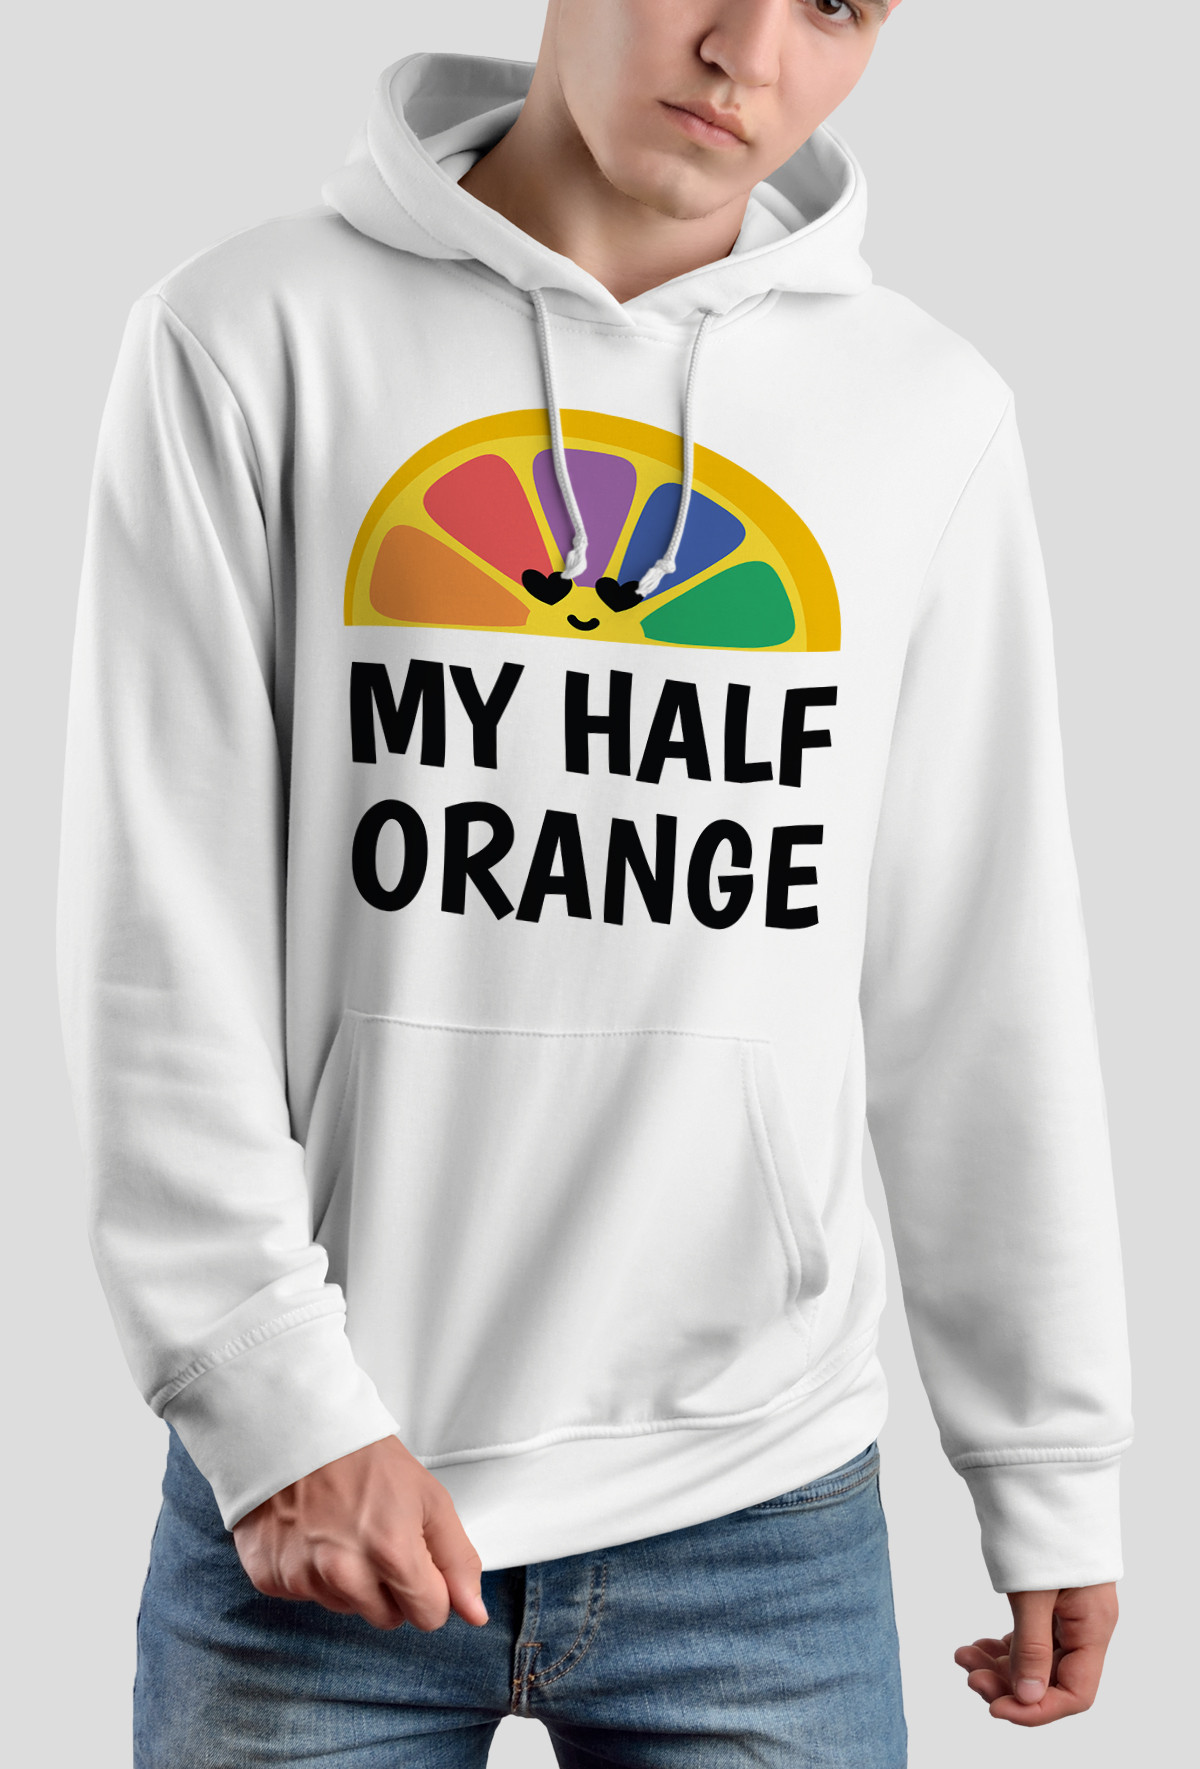 Bluza - My half Orange (Wyjątkowy prezent)